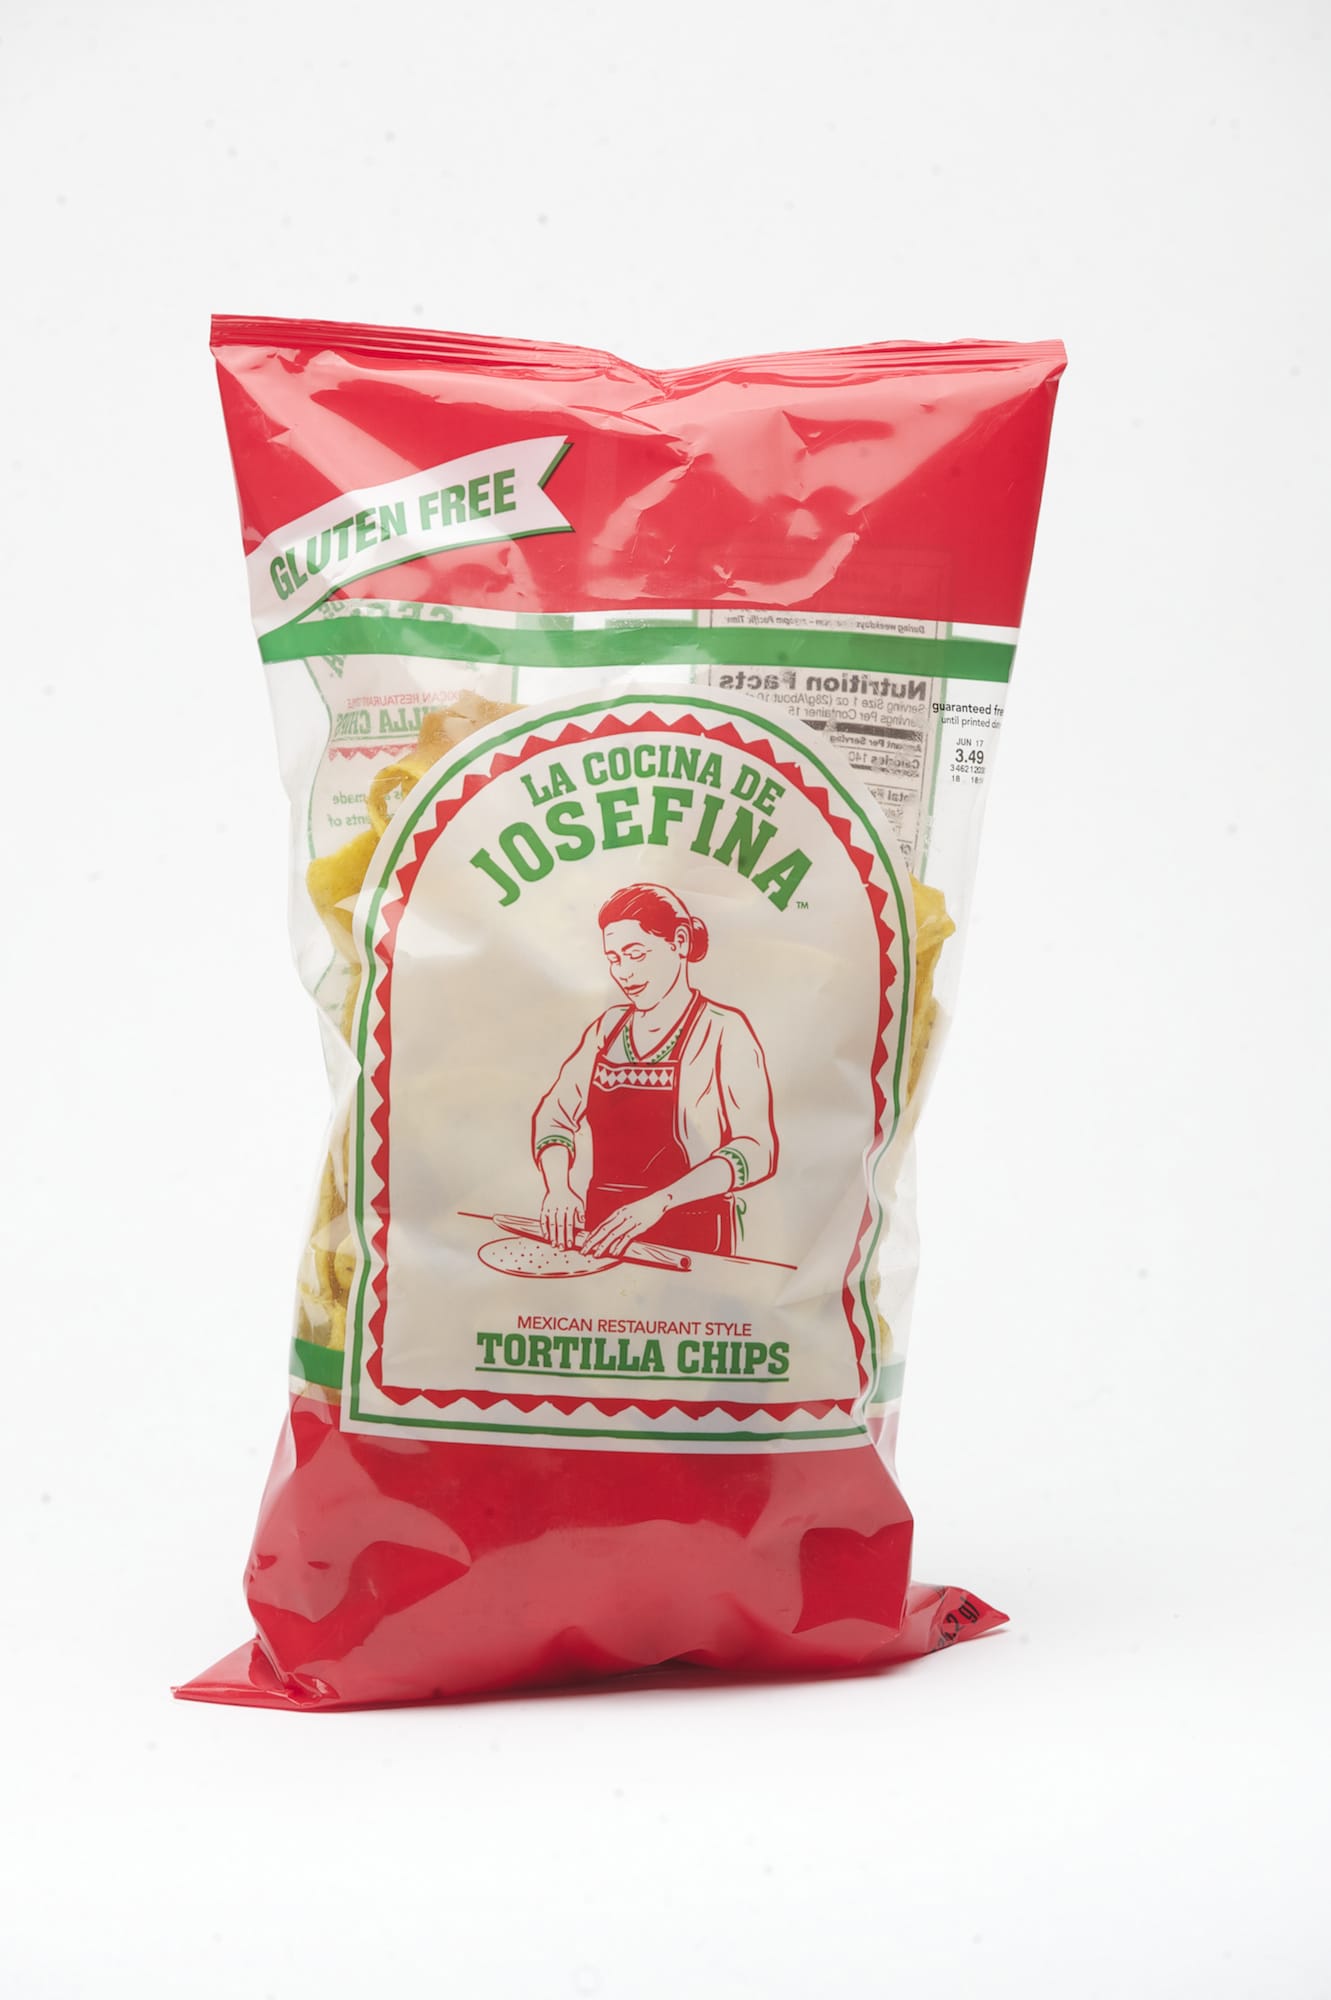 Battle of the tortilla chips: Josefina's